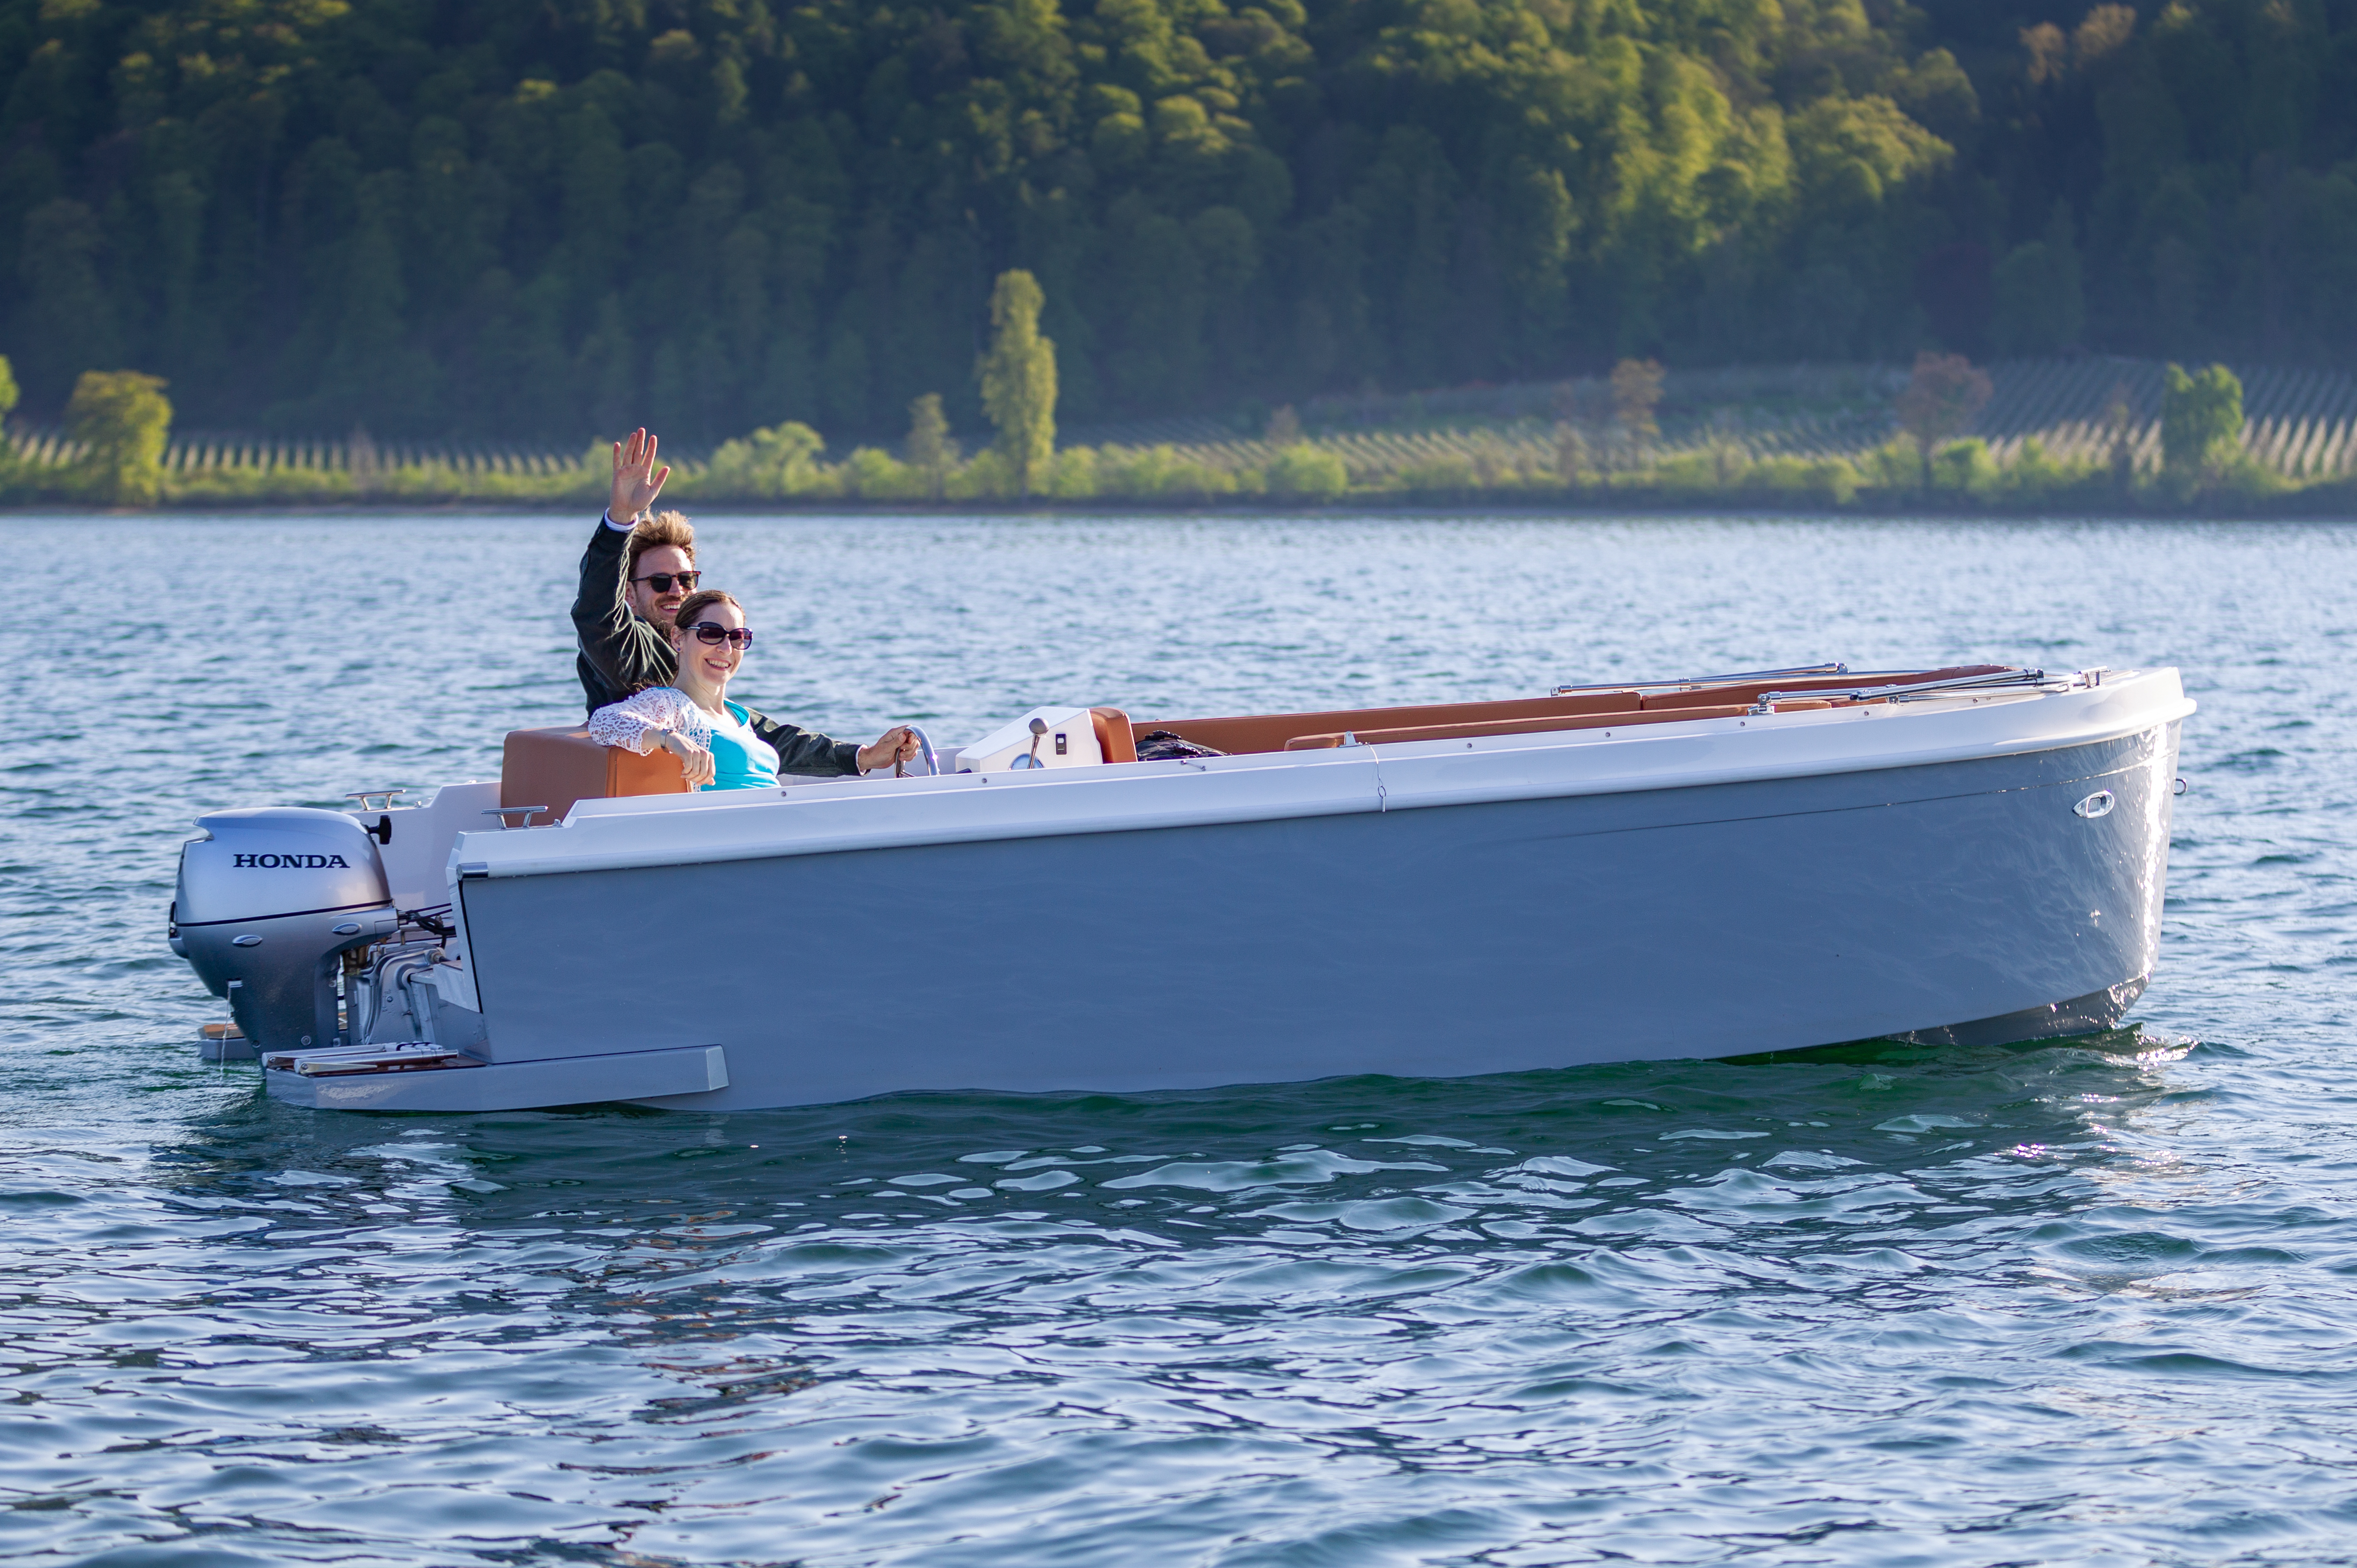 Vermietung Motorboot für schöne Tagestrips Alonsea 490 (4,70m x 1,90m) - 1 Tag